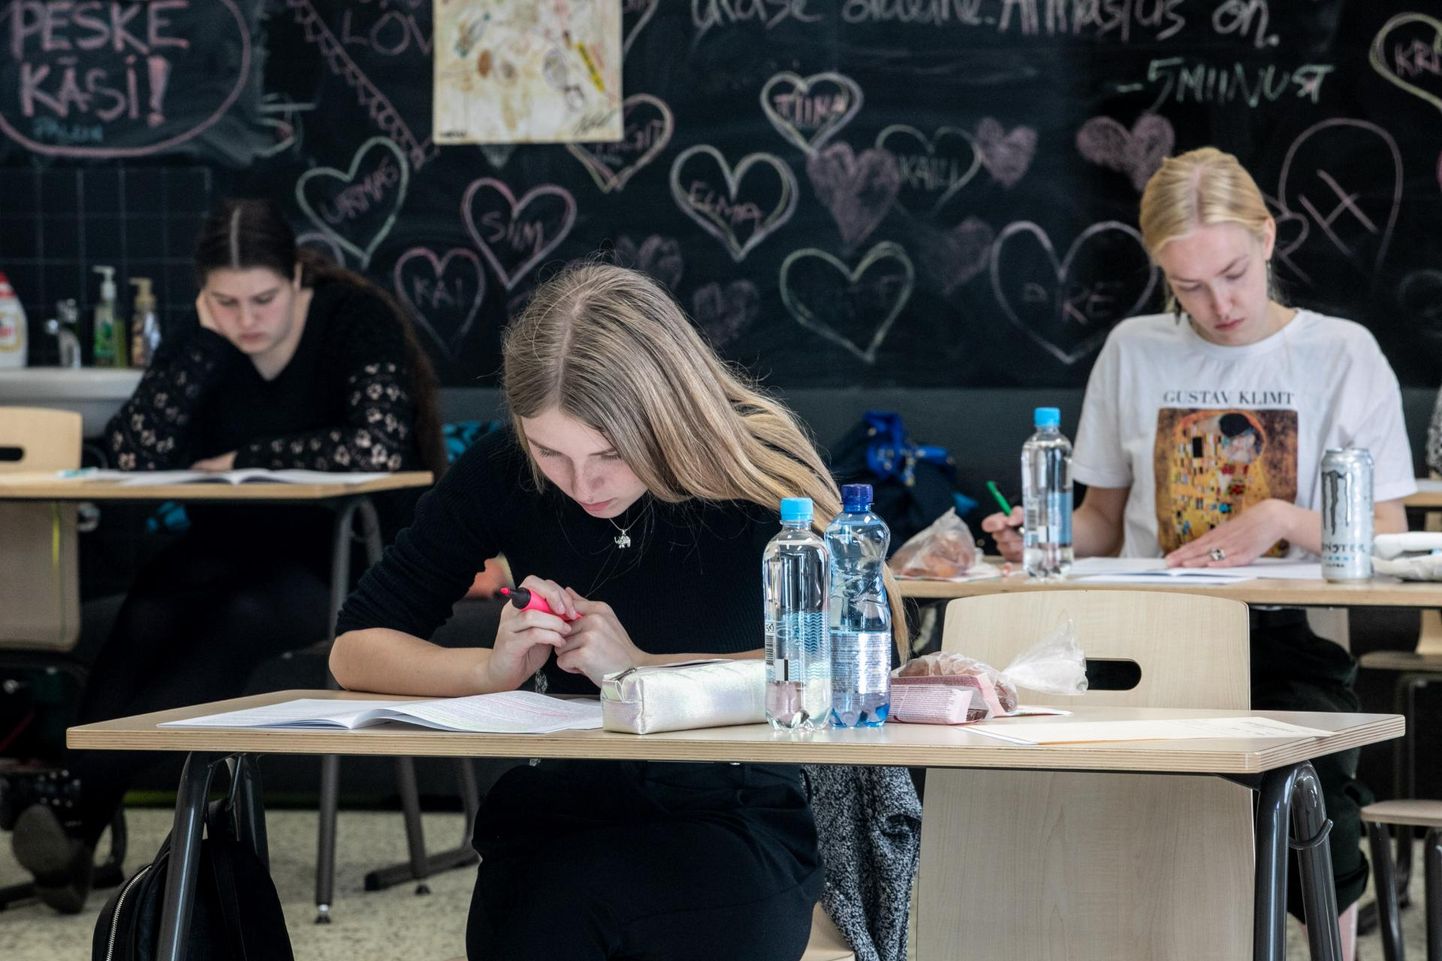 Kodumaakonnas olid eksamitel edukaimad Pärnu Sütevaka humanitaargümnaasiumi abituriendid. Pildil Sütevaka õpilased emakeele riigieksamil.